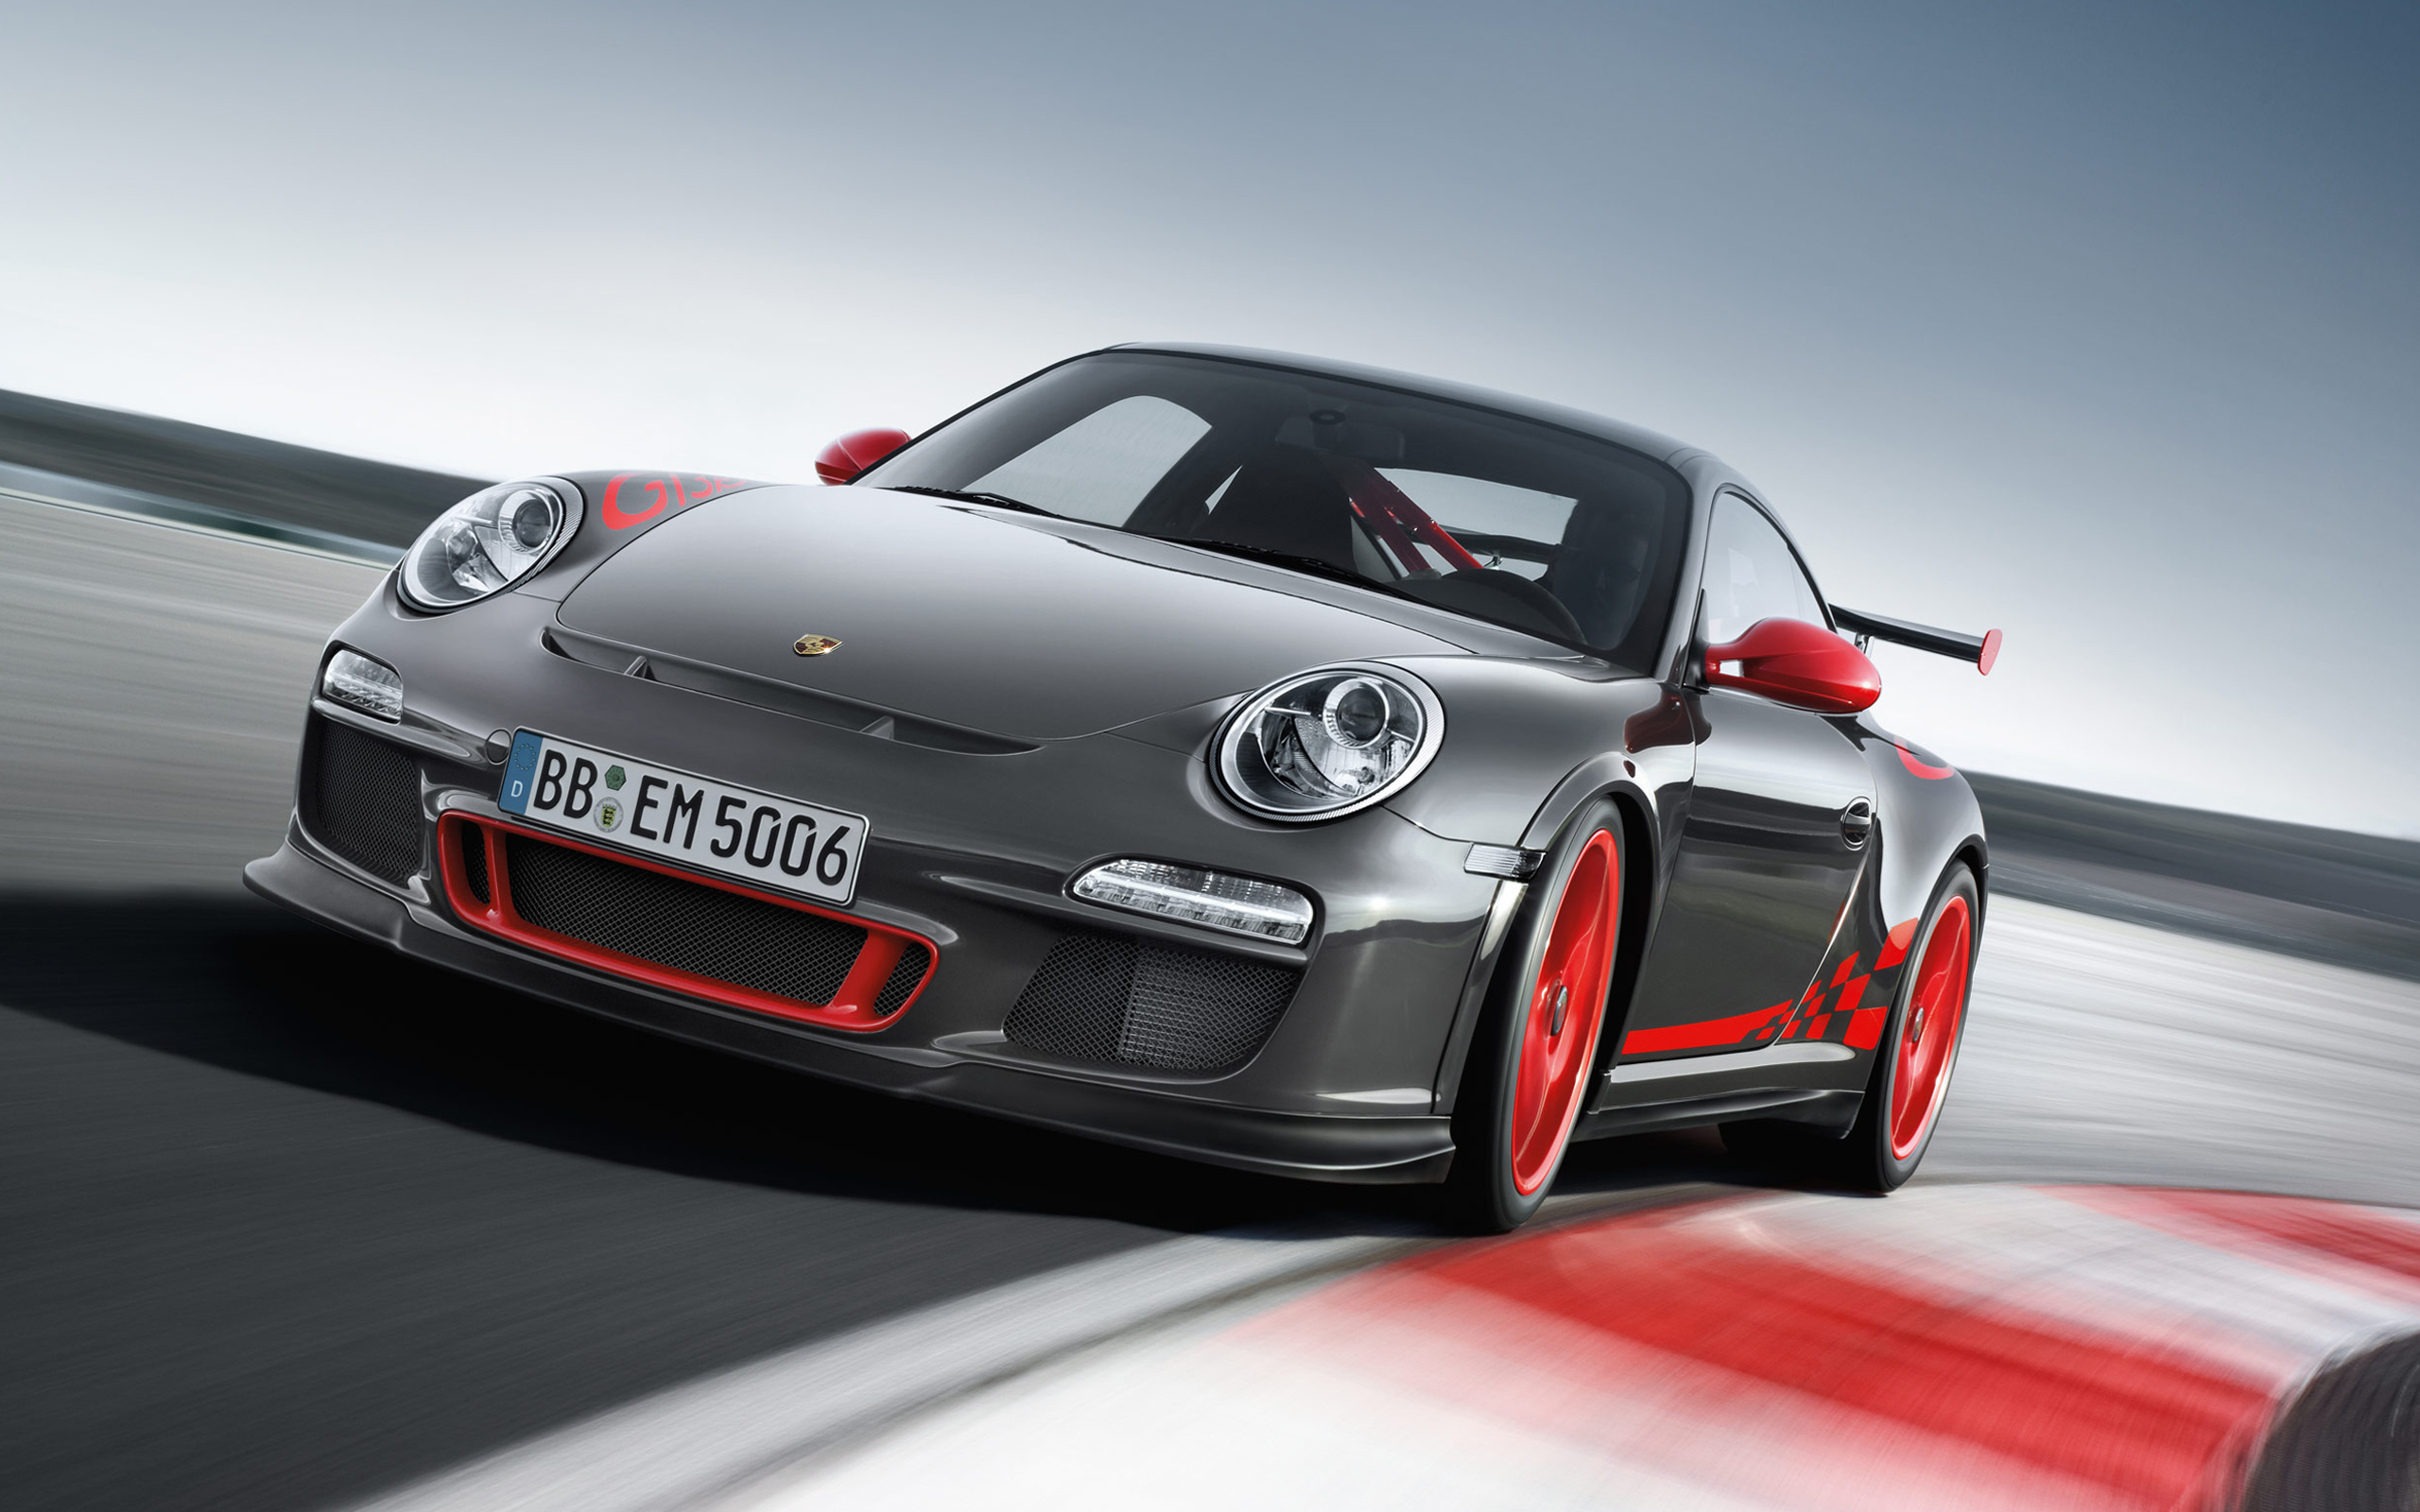 красный спортивный автомобиль Porsche Carrera GT скачать